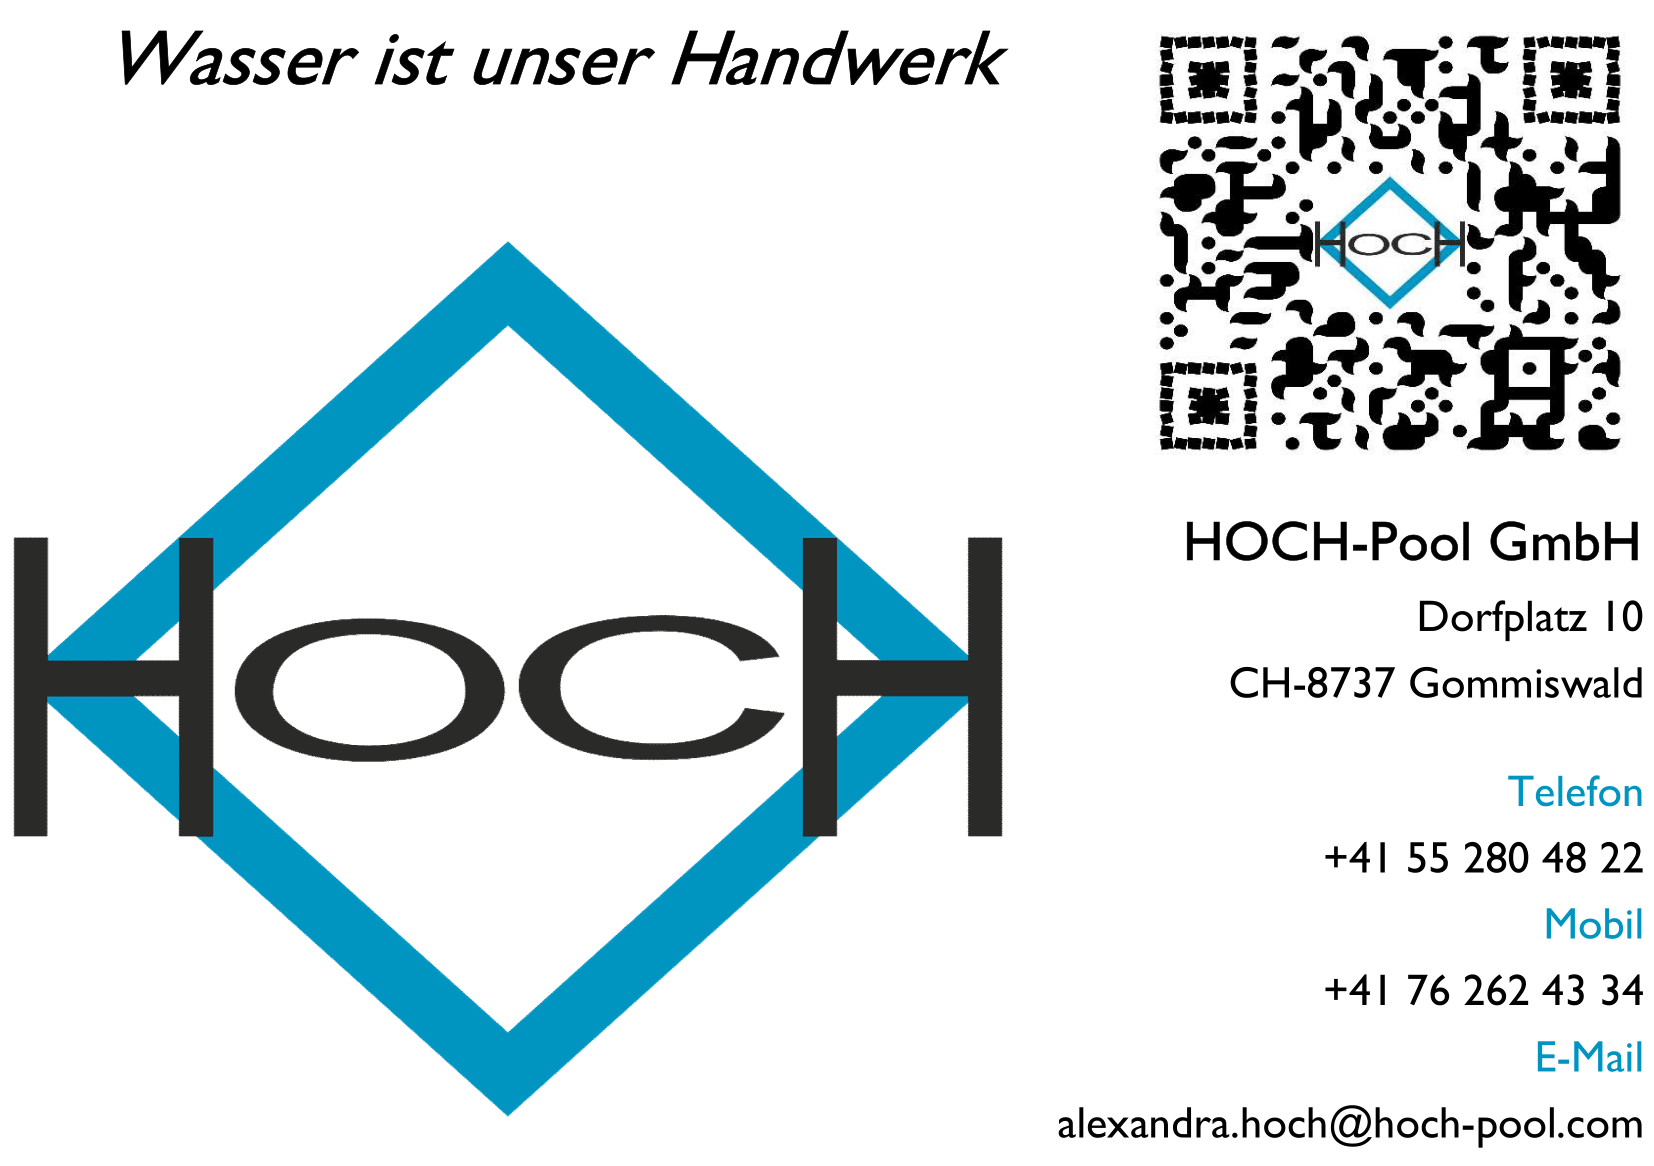 HOCH-Pool GmbH